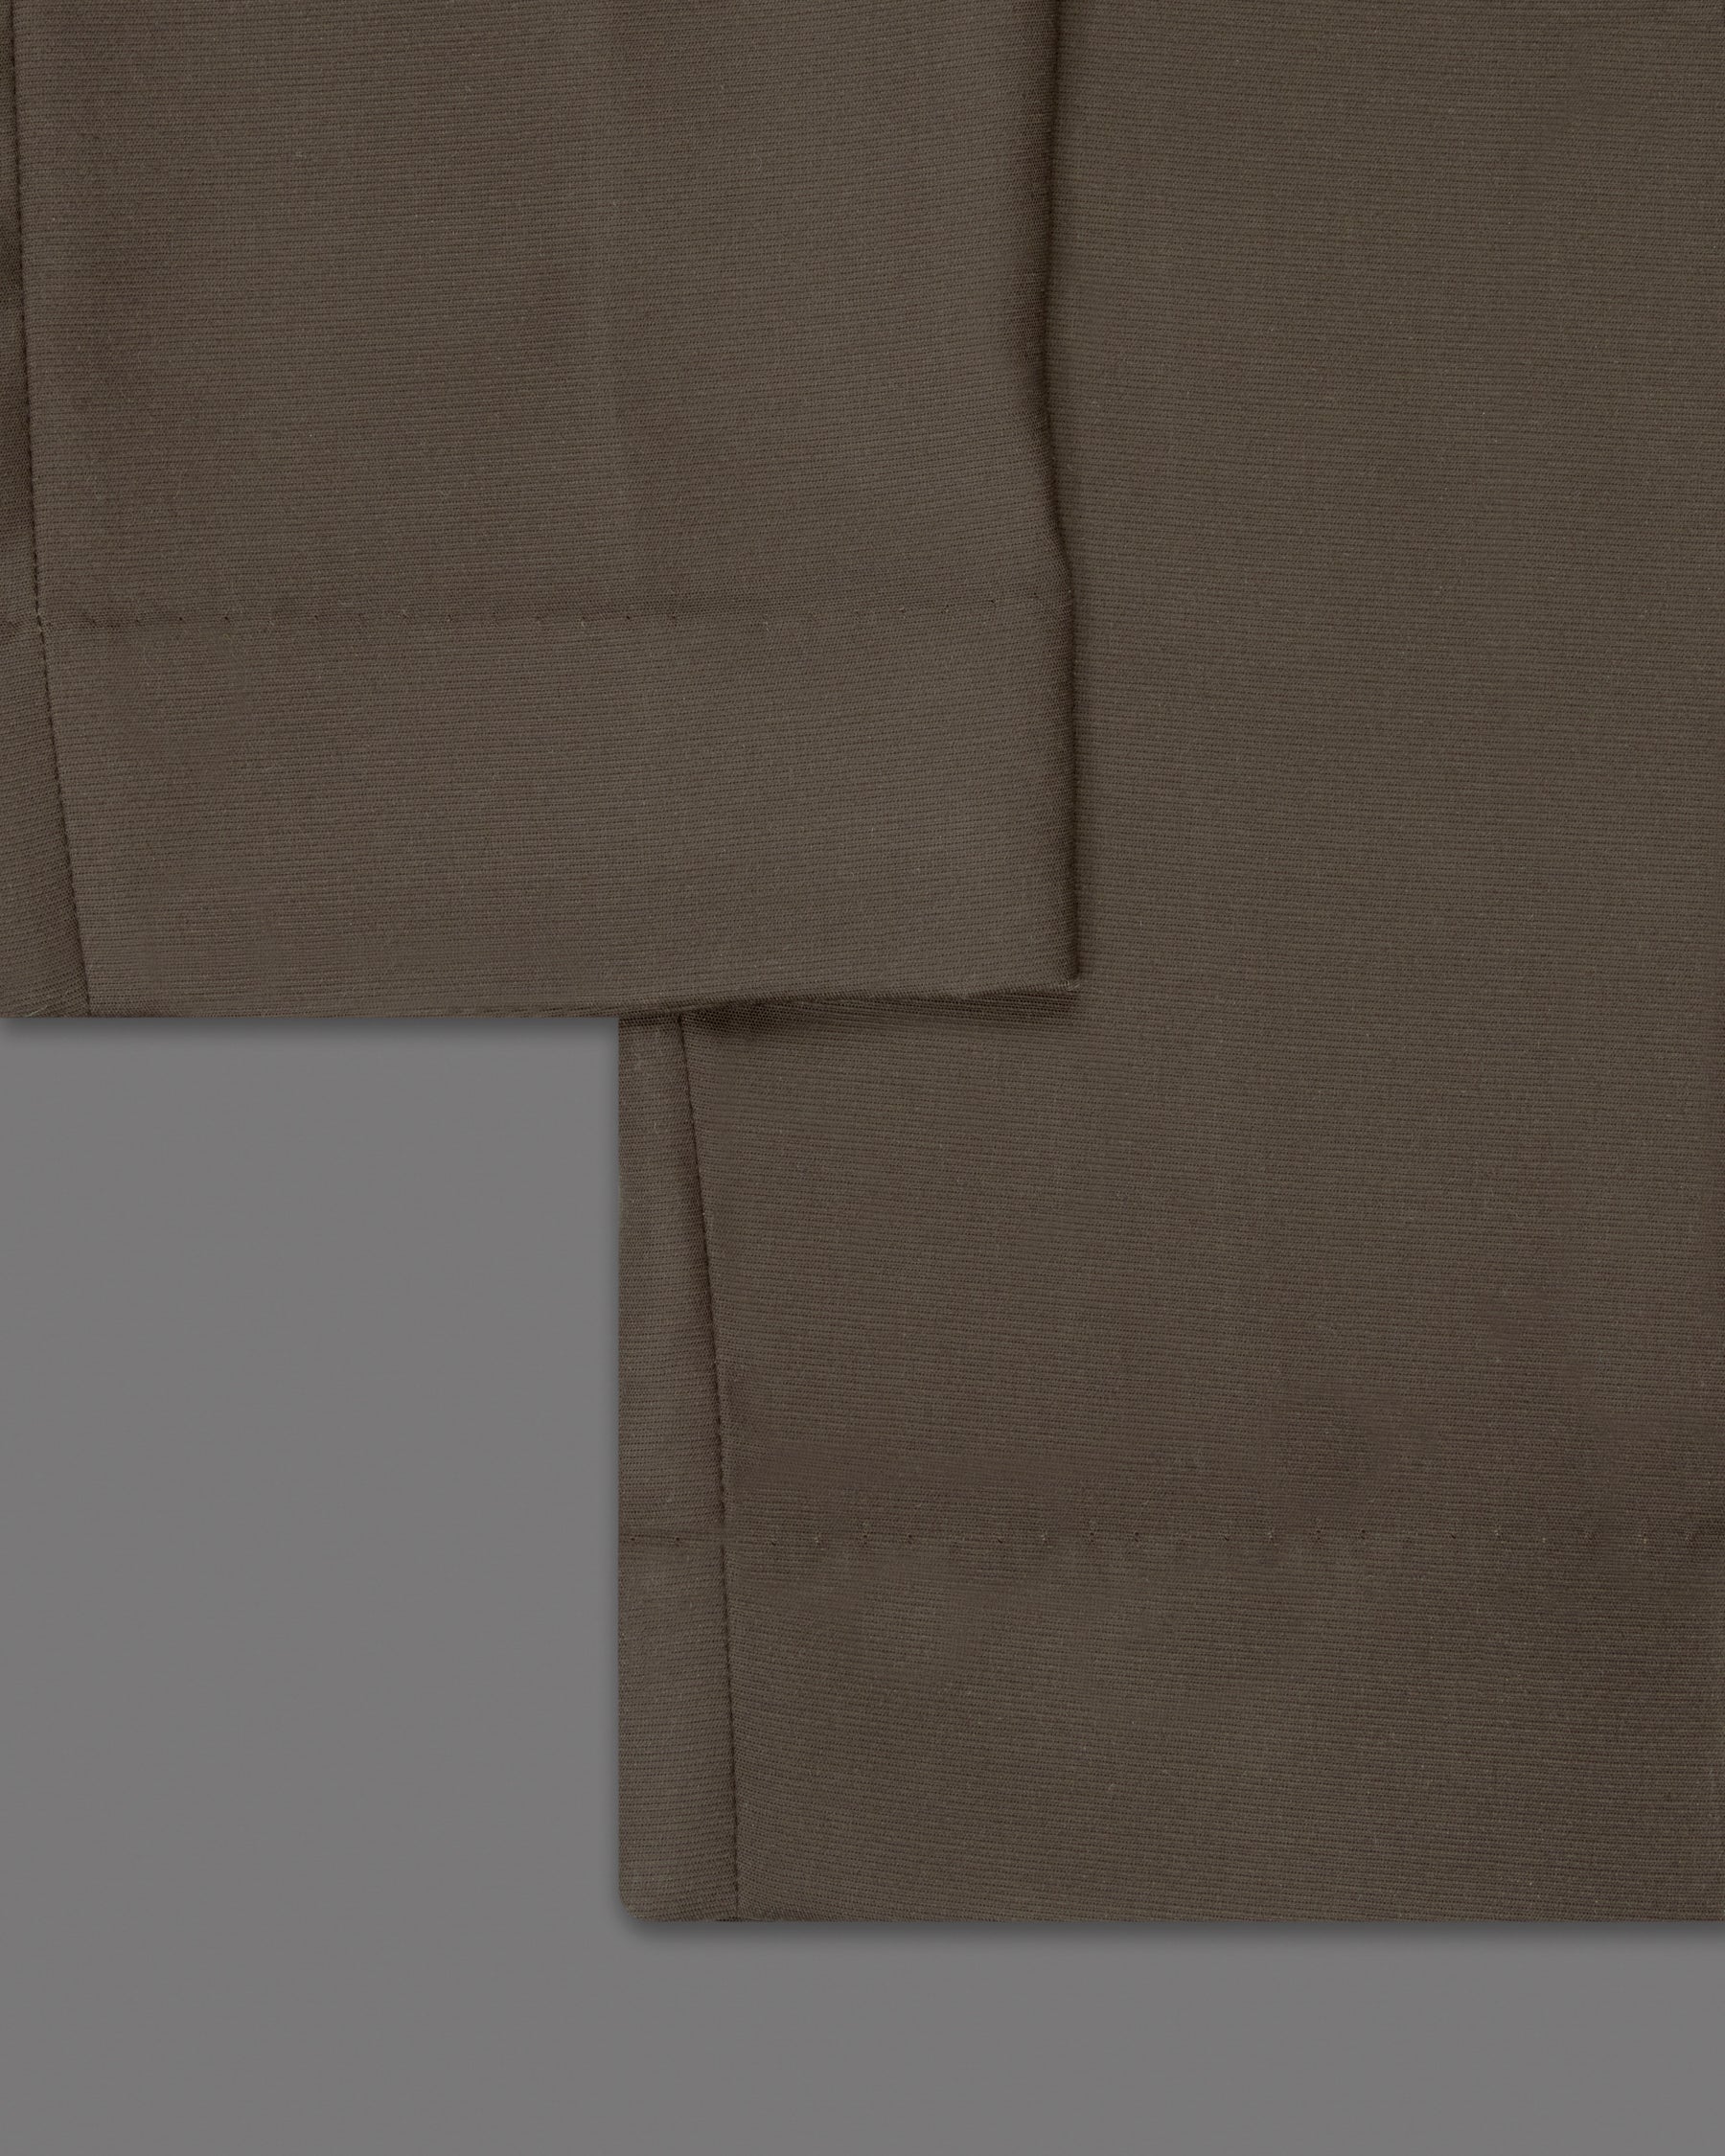 Emperor Brown Premium Cotton Pant